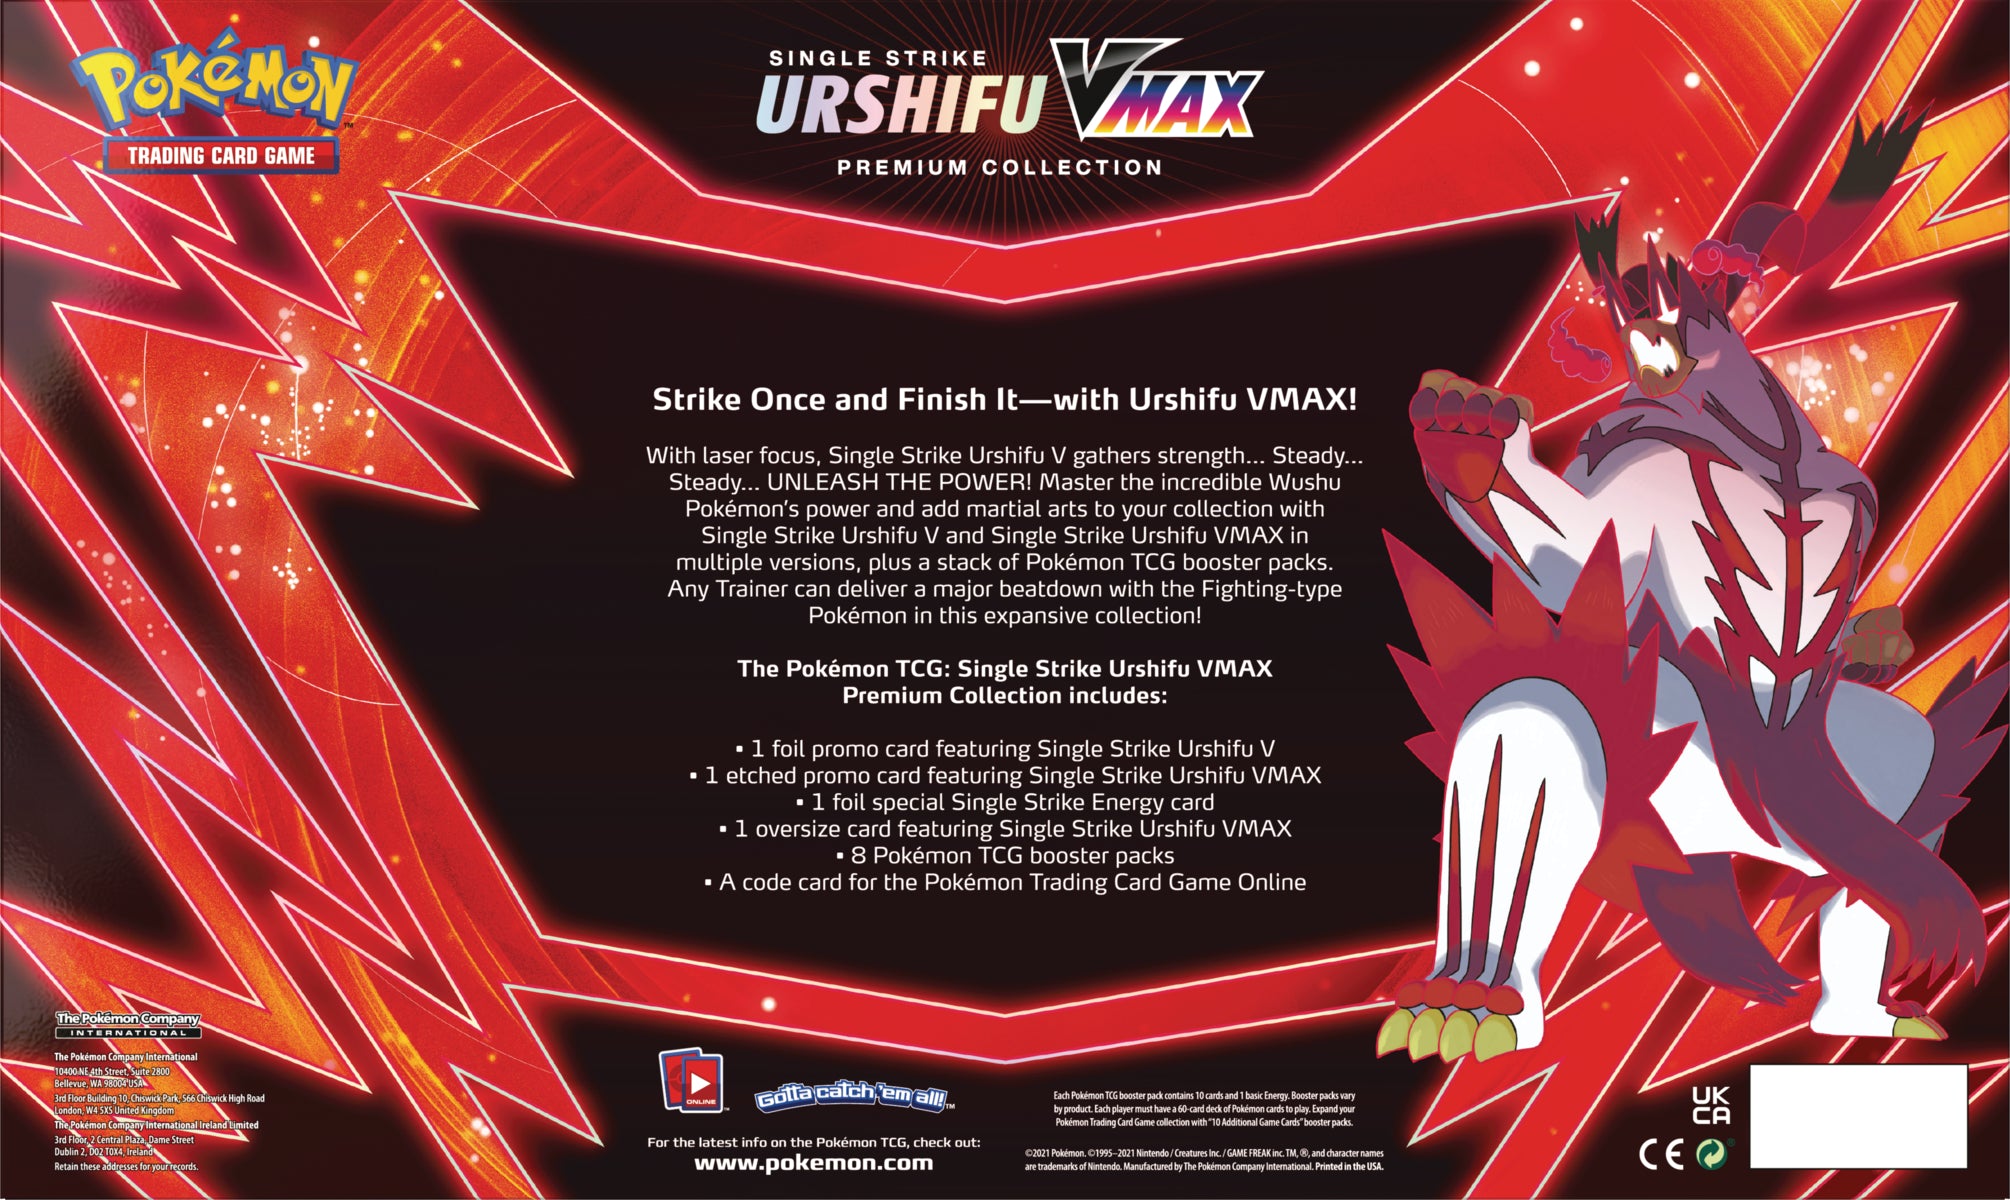 Single/Rapid Strike Urshifu VMAX Premium Collections